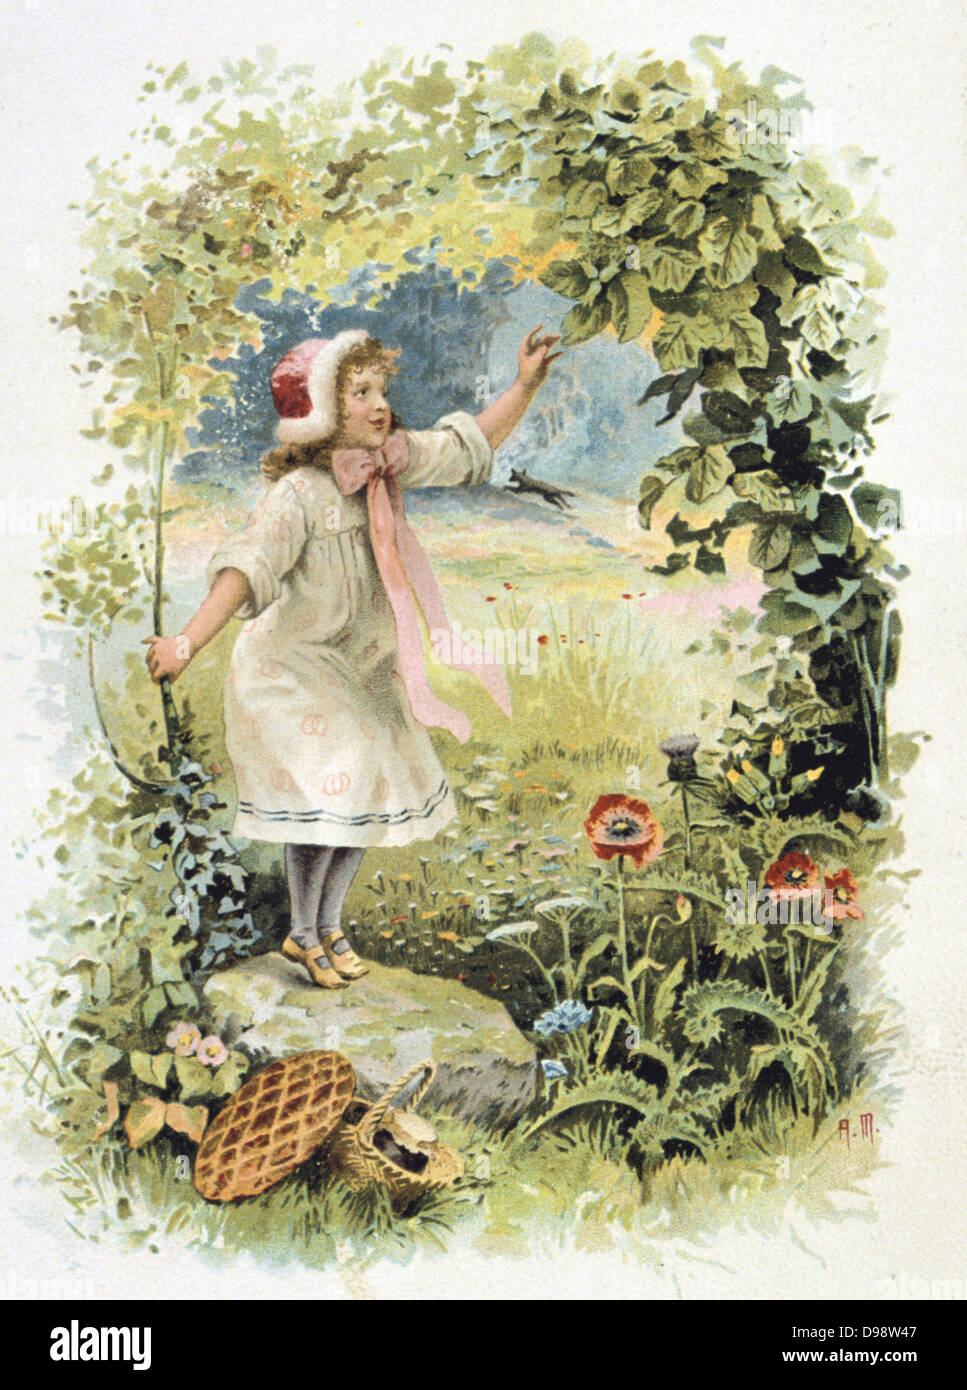 Rotkäppchen im Wald auf dem Weg zu ihrer Großmutter zu sehen. Französische Handel Karte c 1900 veranschaulicht die Märchen von der französische Autor Charles Perrault (1628-1703). Literatur Juvenile Chromolithograph Stockfoto